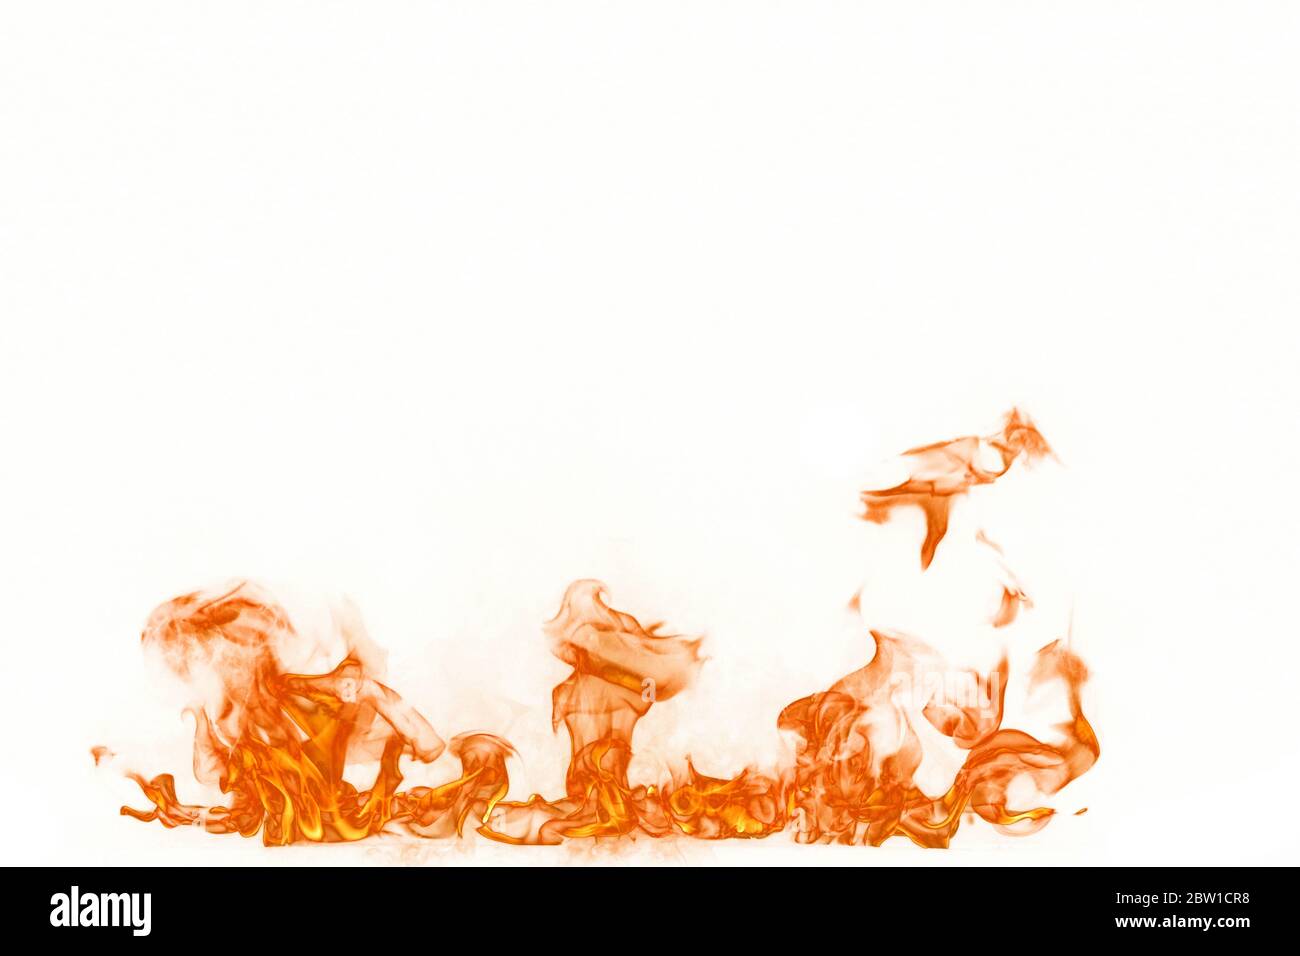 Fiamme di fuoco isolate su sfondo bianco Foto Stock